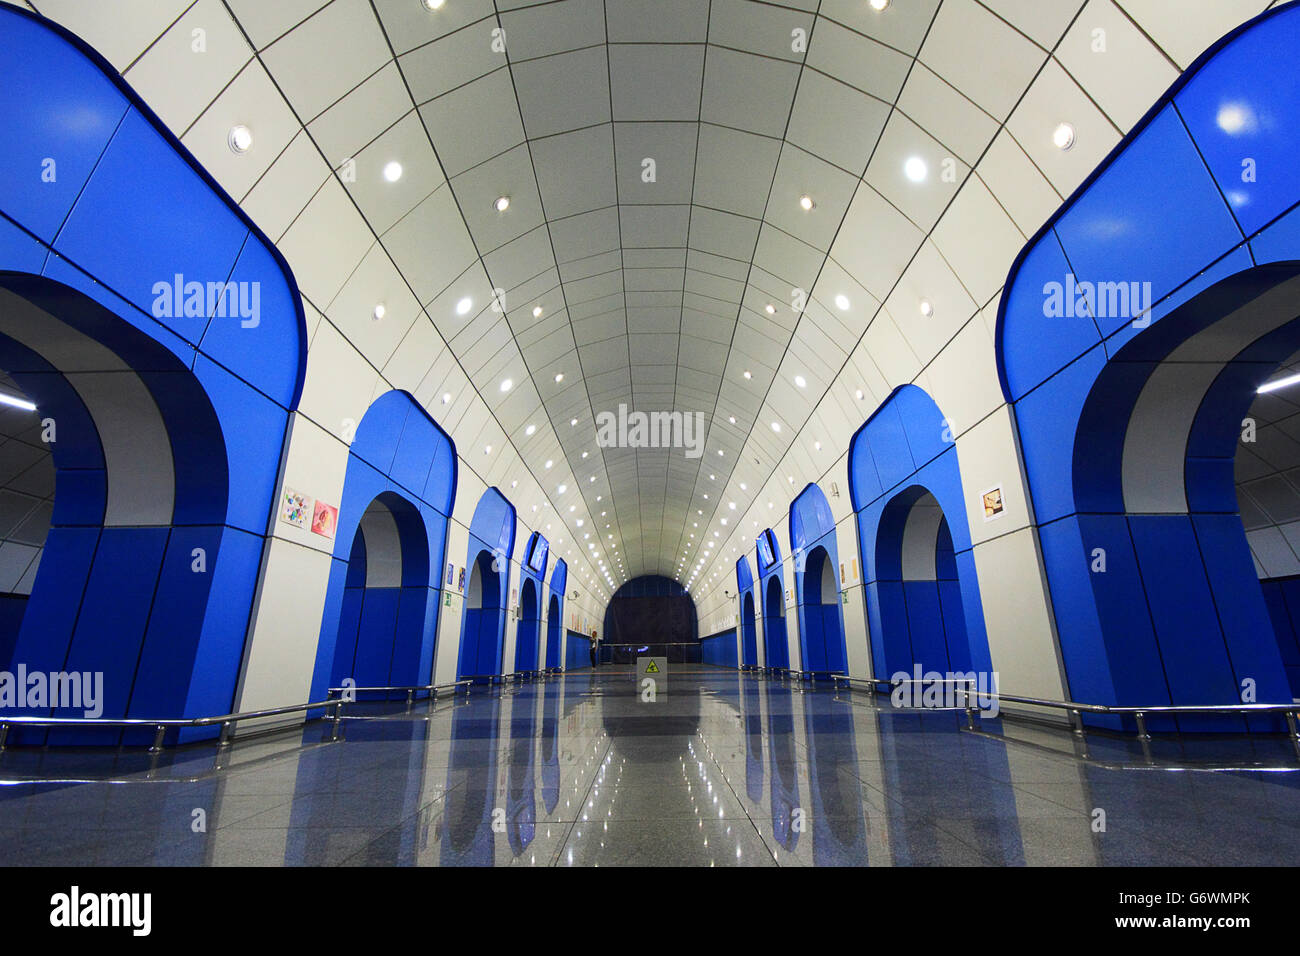 La station de métro de Baïkonour à Almaty, Kazakhstan. Banque D'Images